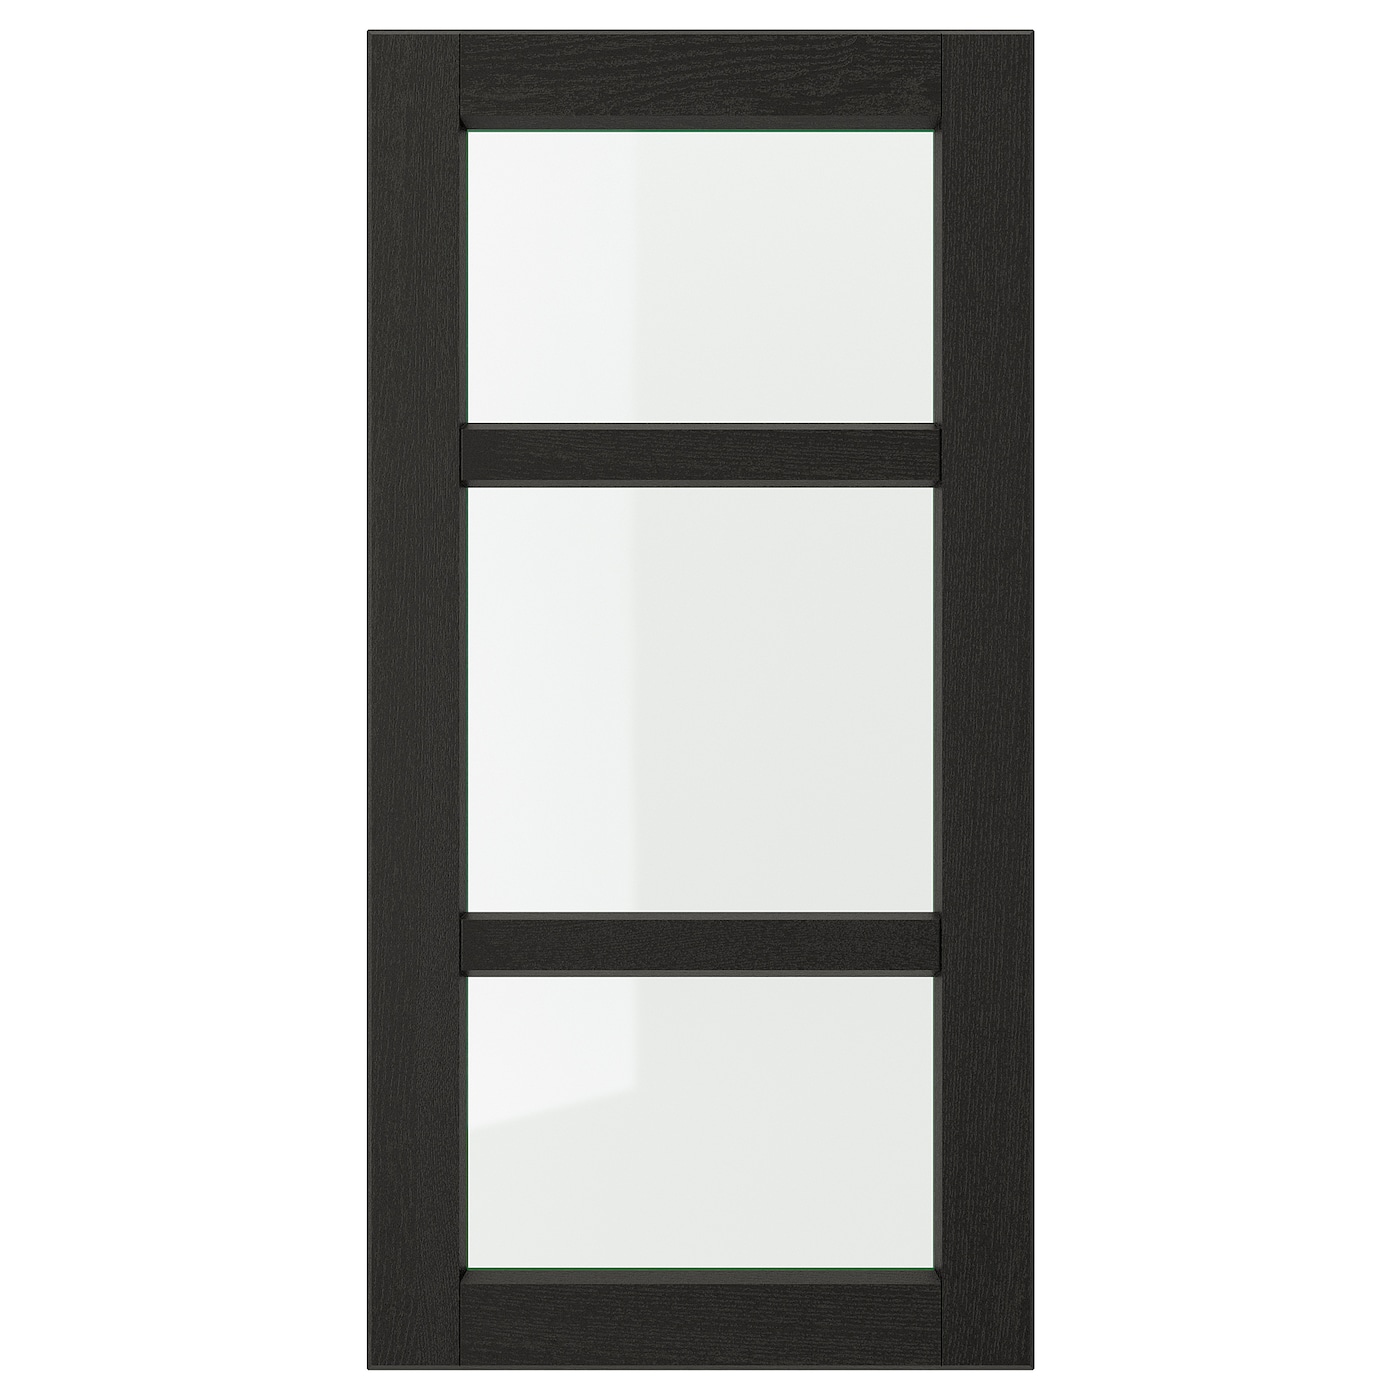 Дверца со стеклом - IKEA LERHYTTAN, 80х40 см, черный, ЛЕРХЮТТАН ИКЕА